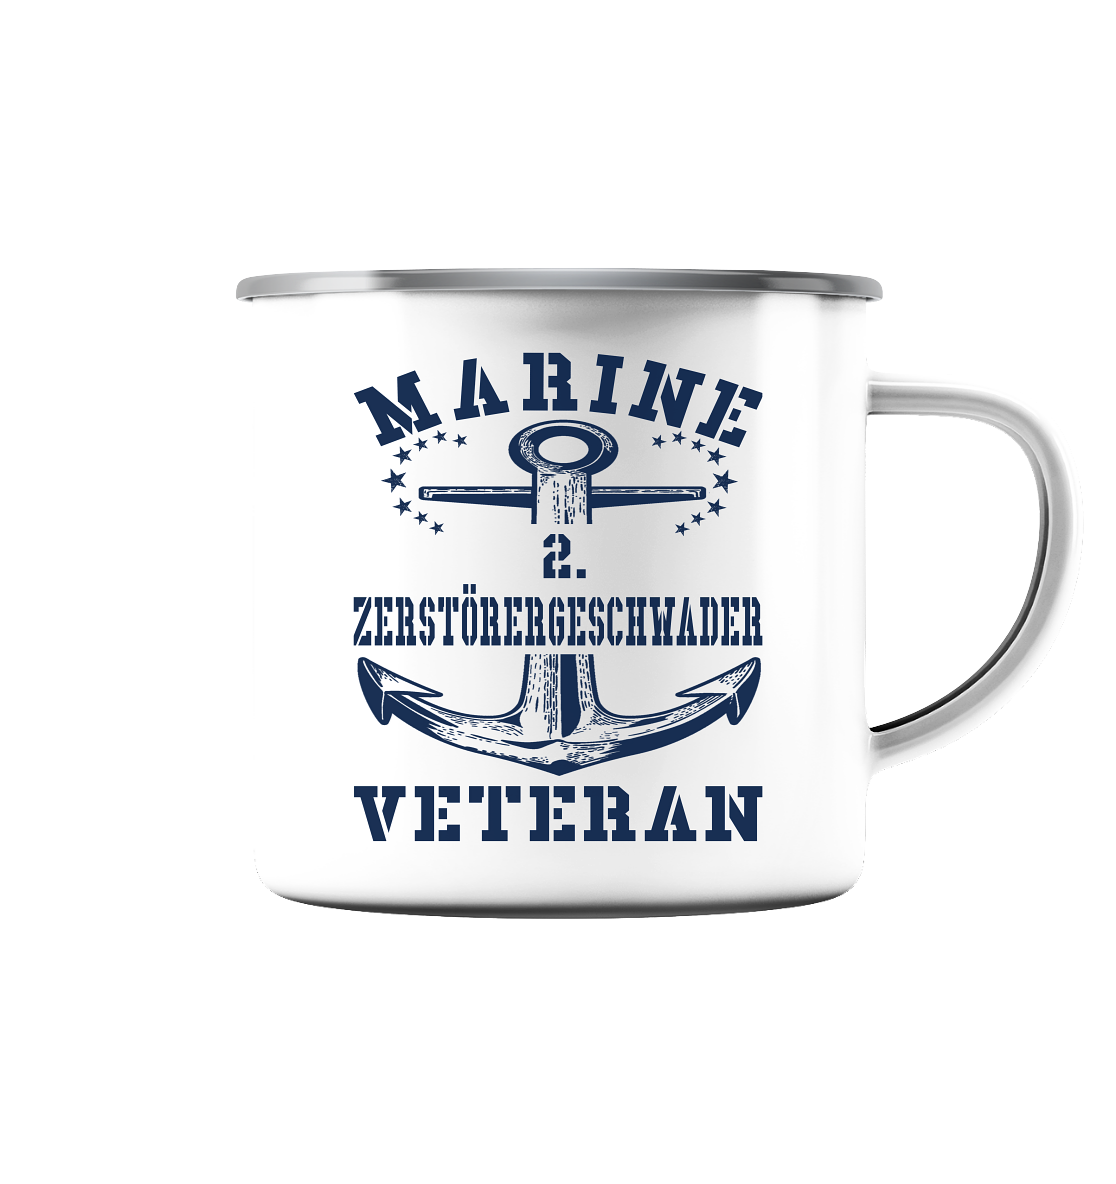 2. Zerstörergeschwader Marine Veteran - Emaille Tasse (Silber)